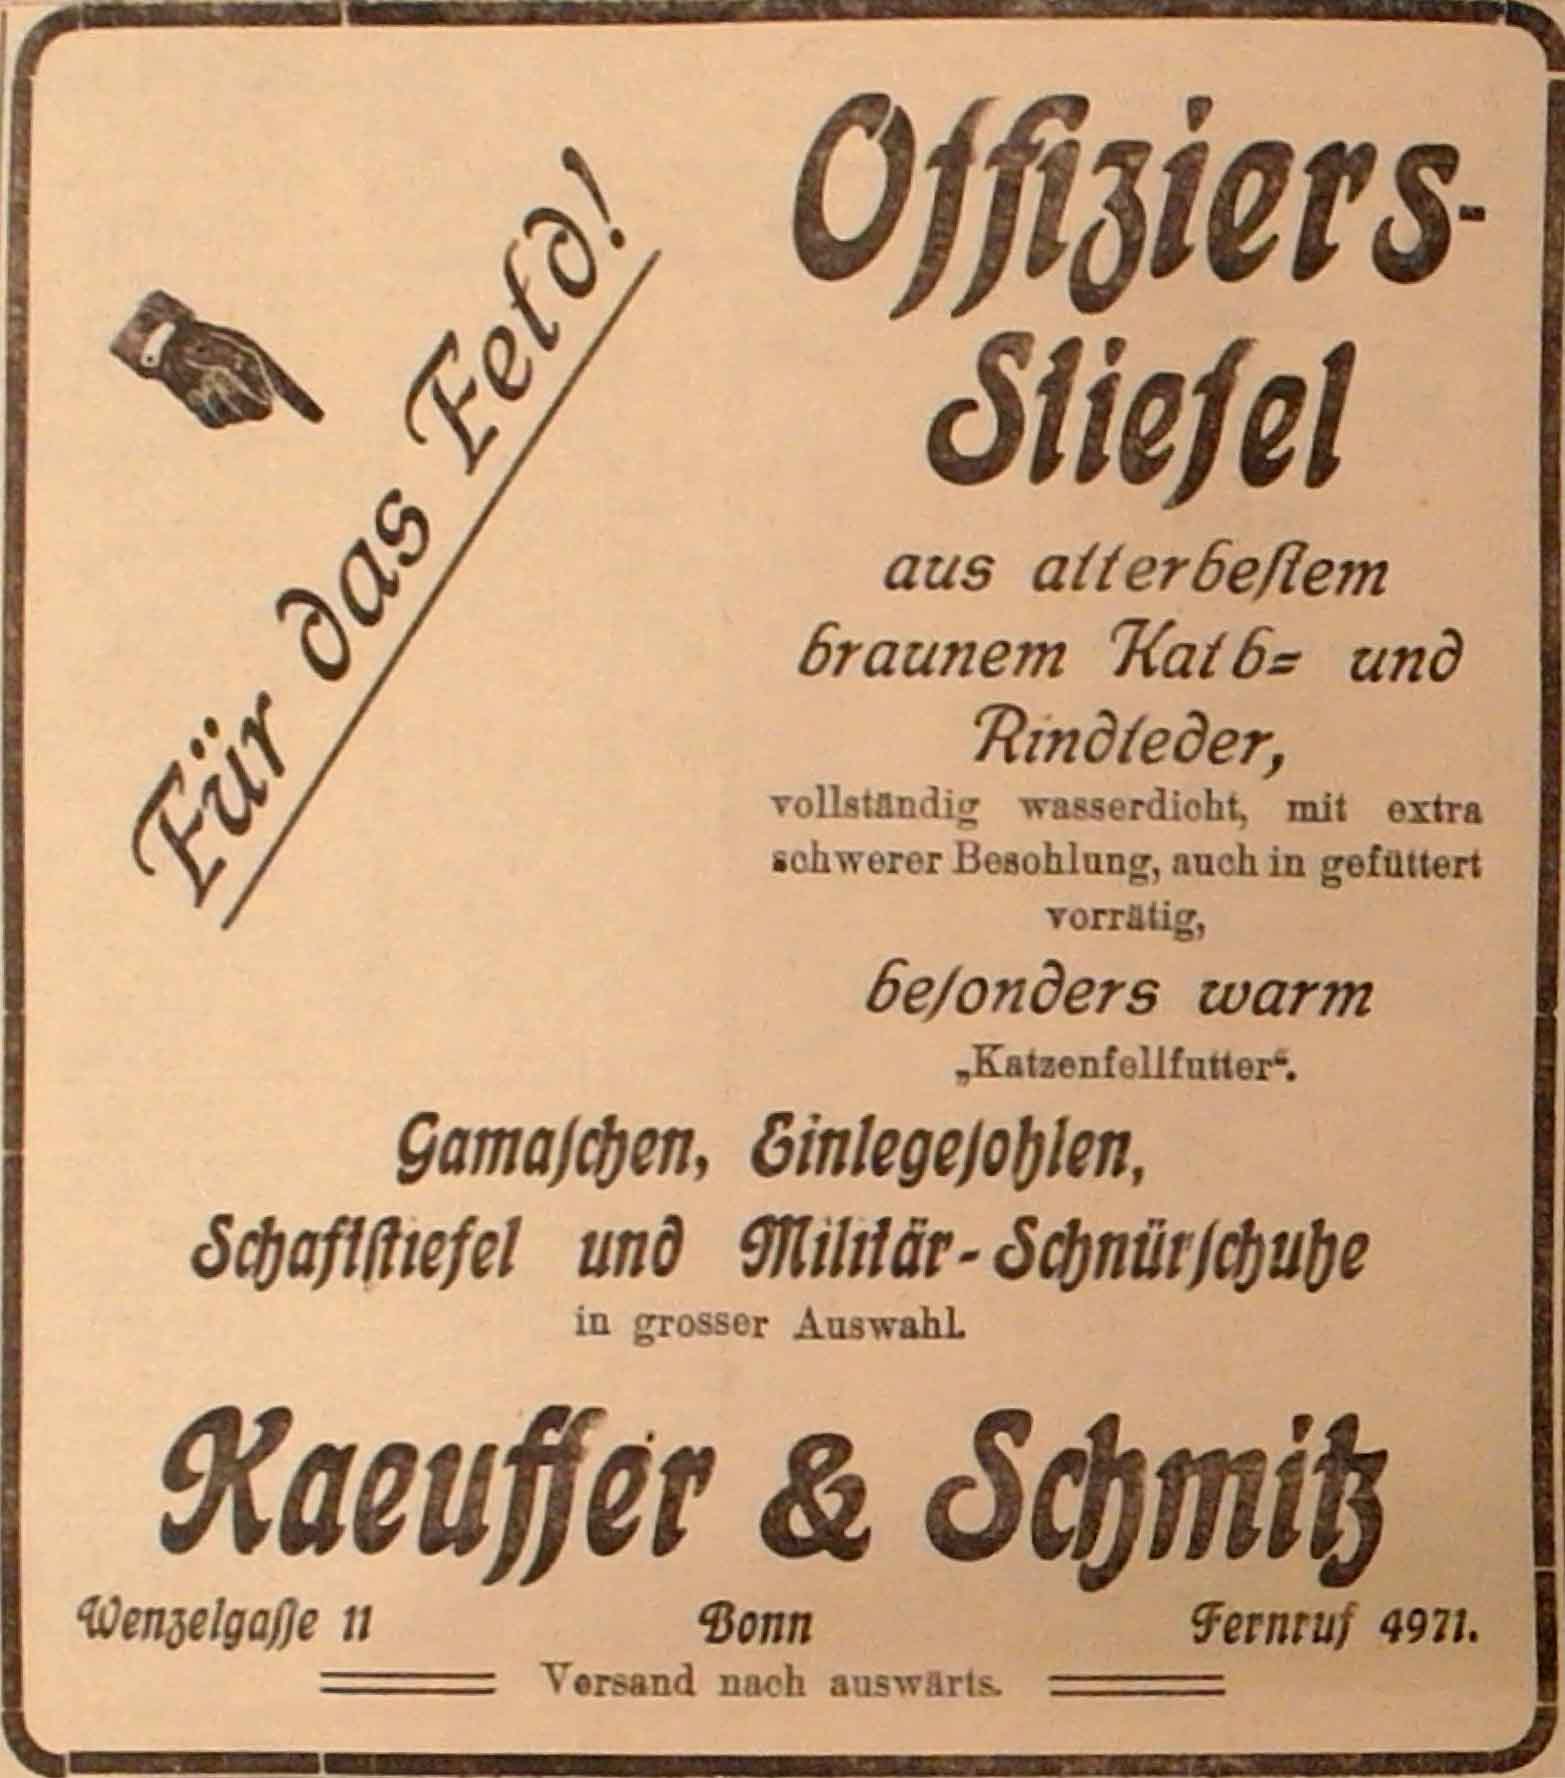 Anzeige im General-Anzeiger vom 27. November 1914